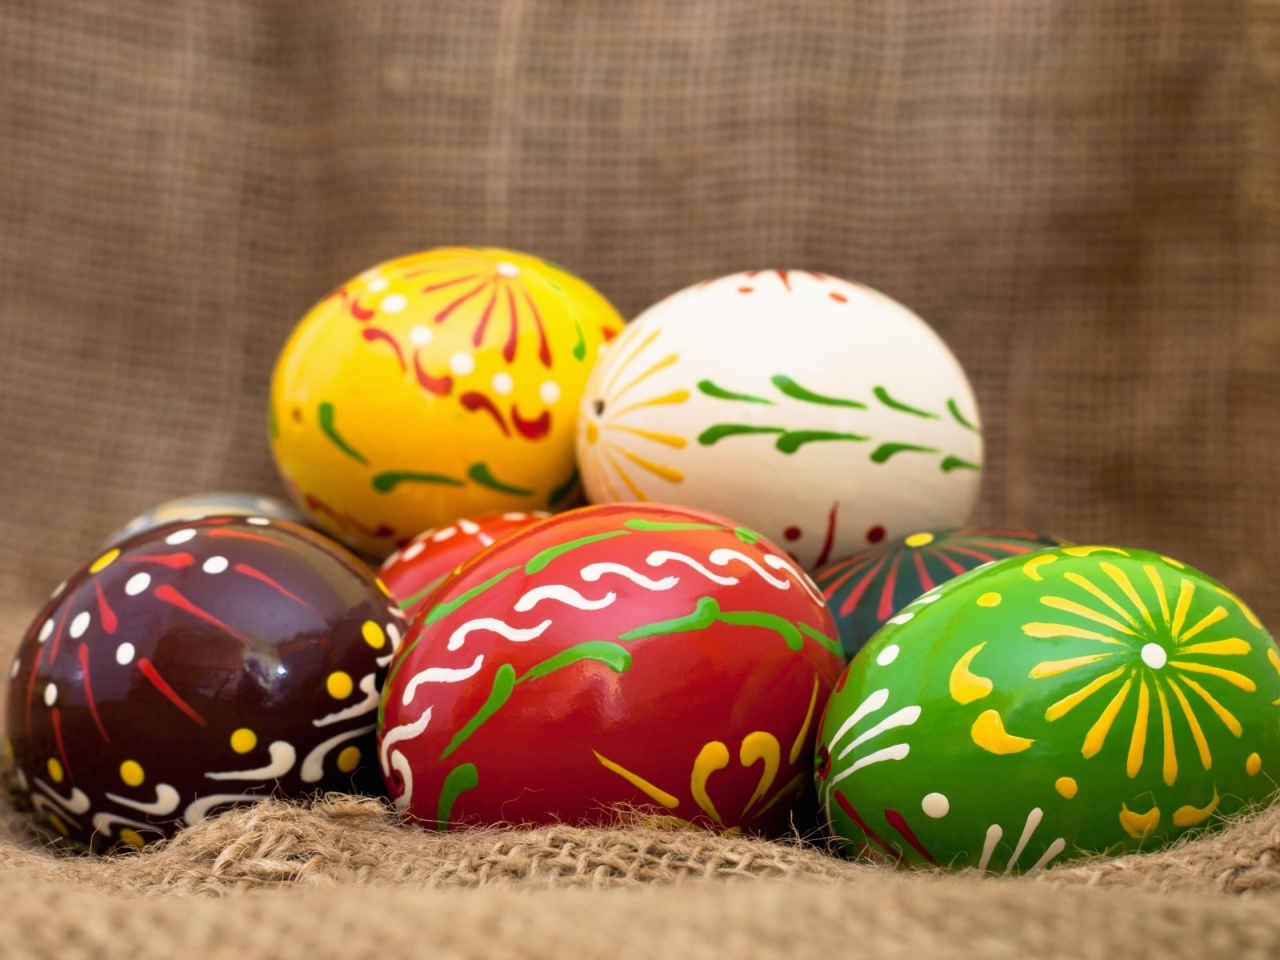 Handmade Easter Eggs for 1280 x 960 resolution